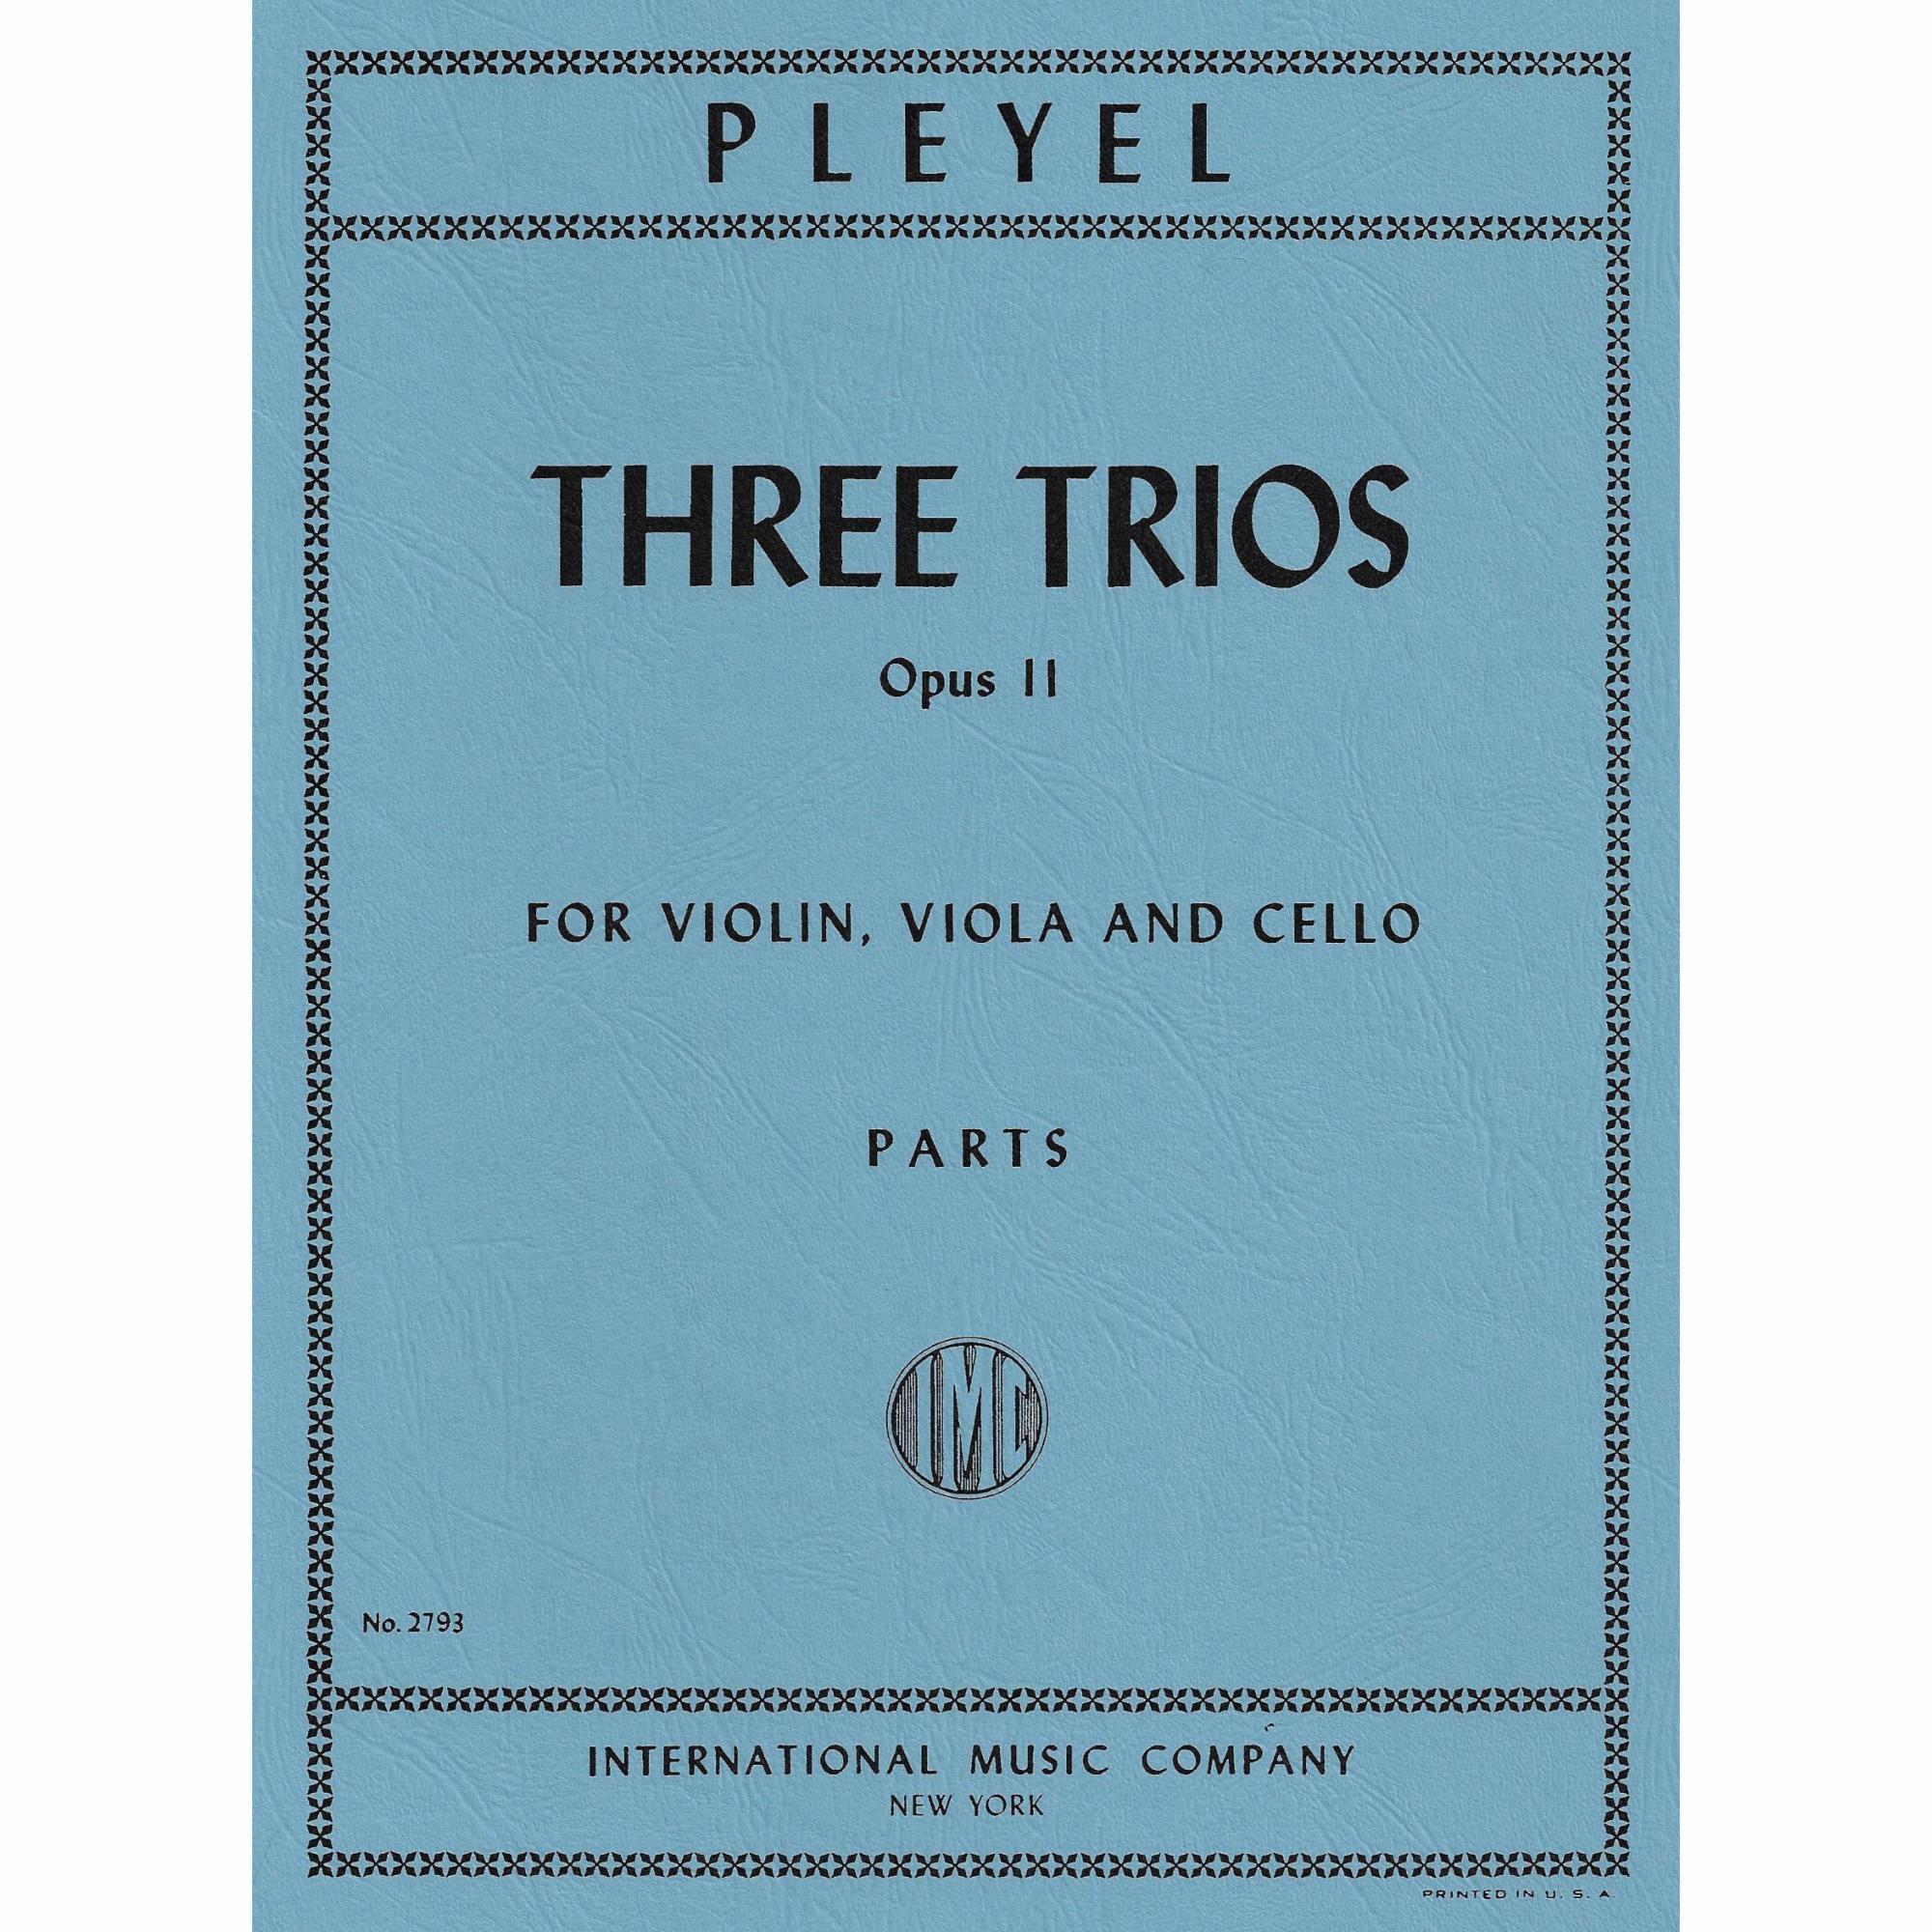 Pleyel -- Three Trios, Op. 11 for Violin, Viola, and Cello